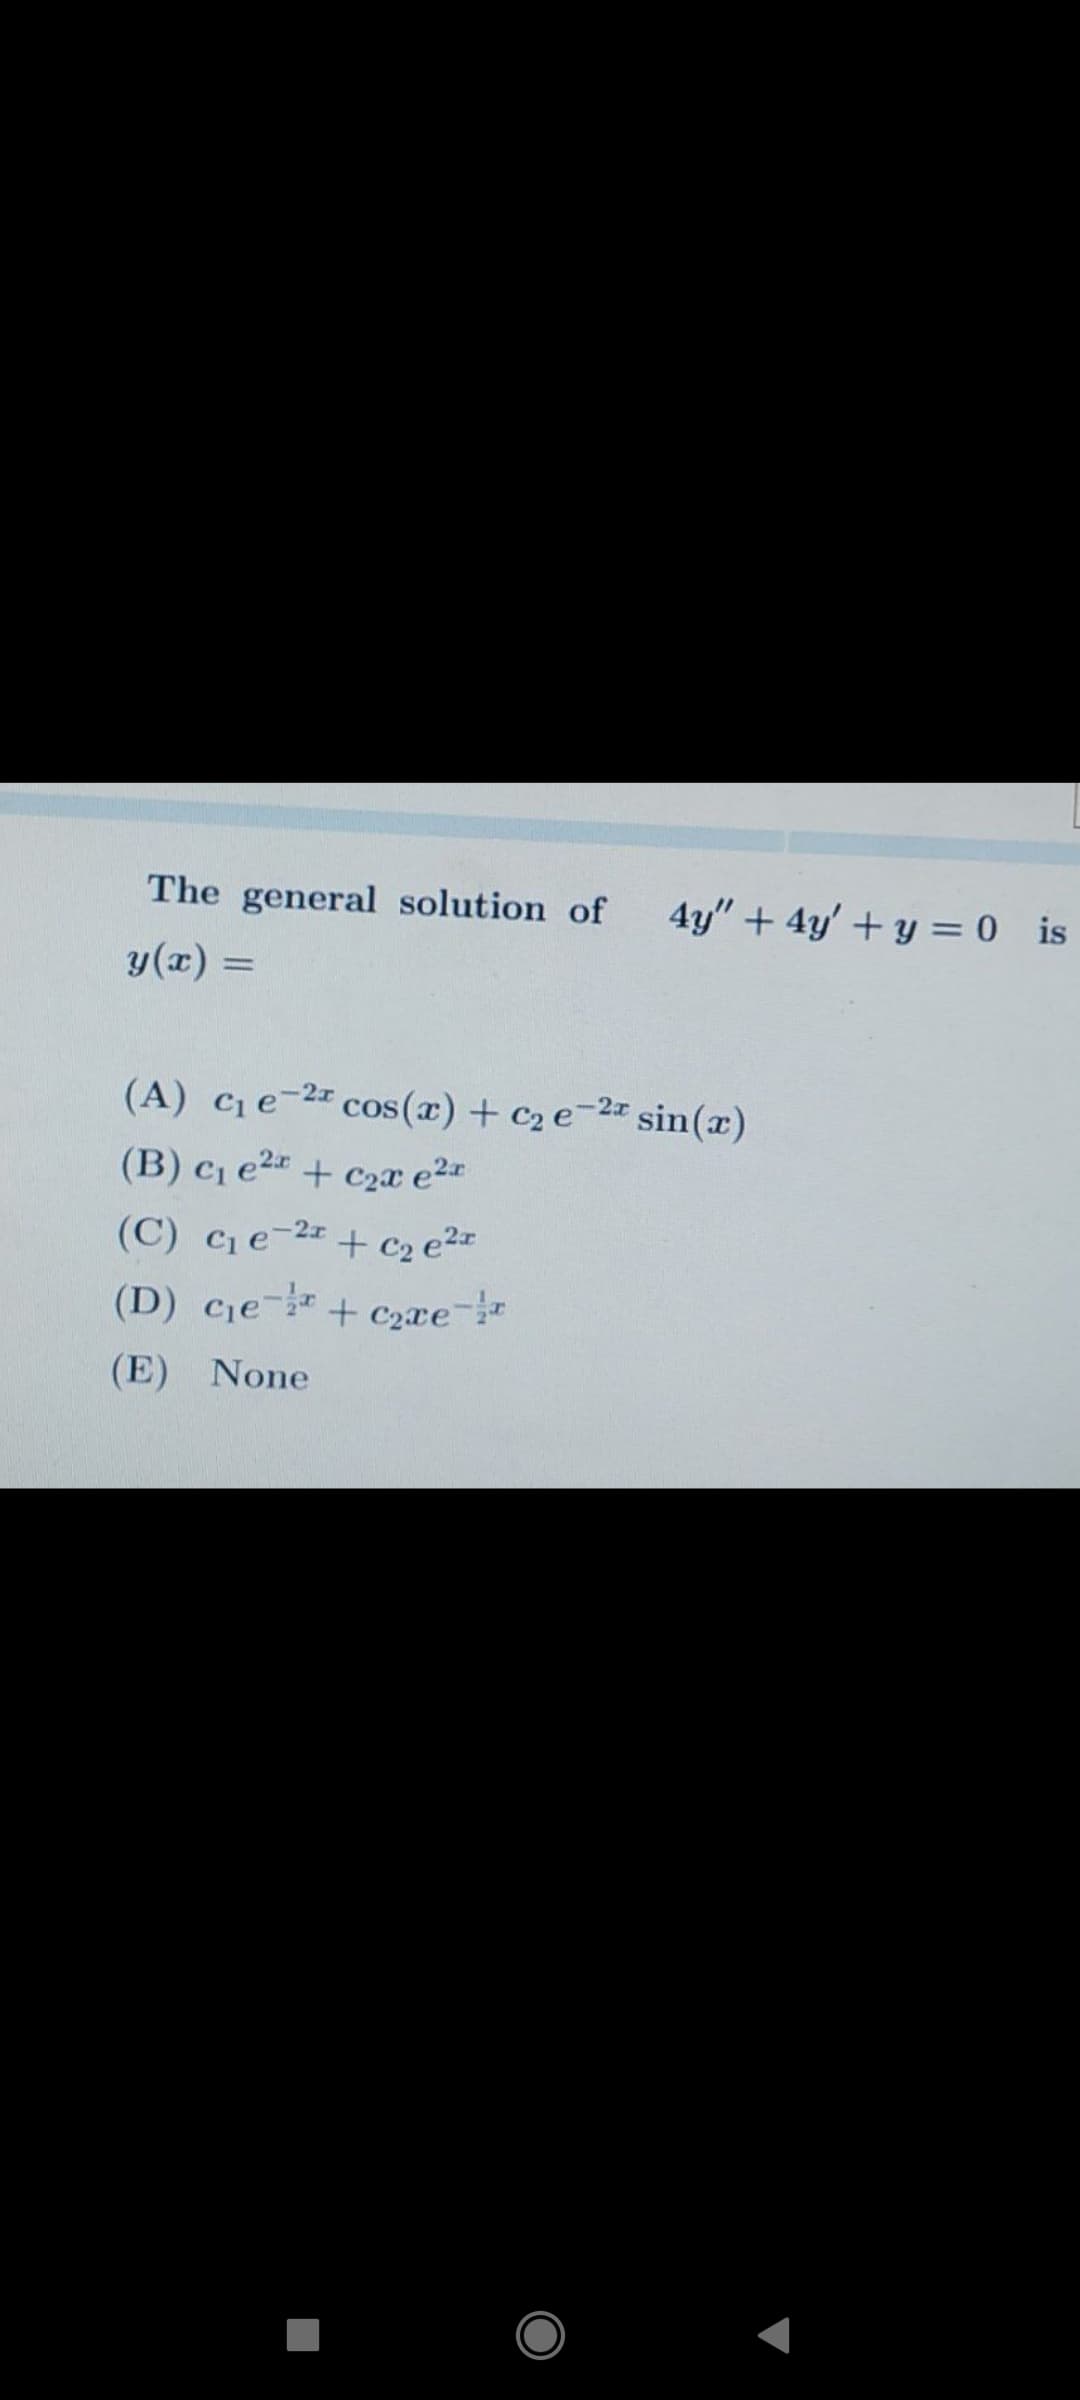 The general solution of
4y" + 4y' +y = 0 is
y(x) =
(A) cqe-2² cos(x) + c2 e¬2z sin(x)
(B) c, e²¤ + czx e²*
(C) Ce-2 + c2 e²=
(D) ce+ C2xe
(E) None
